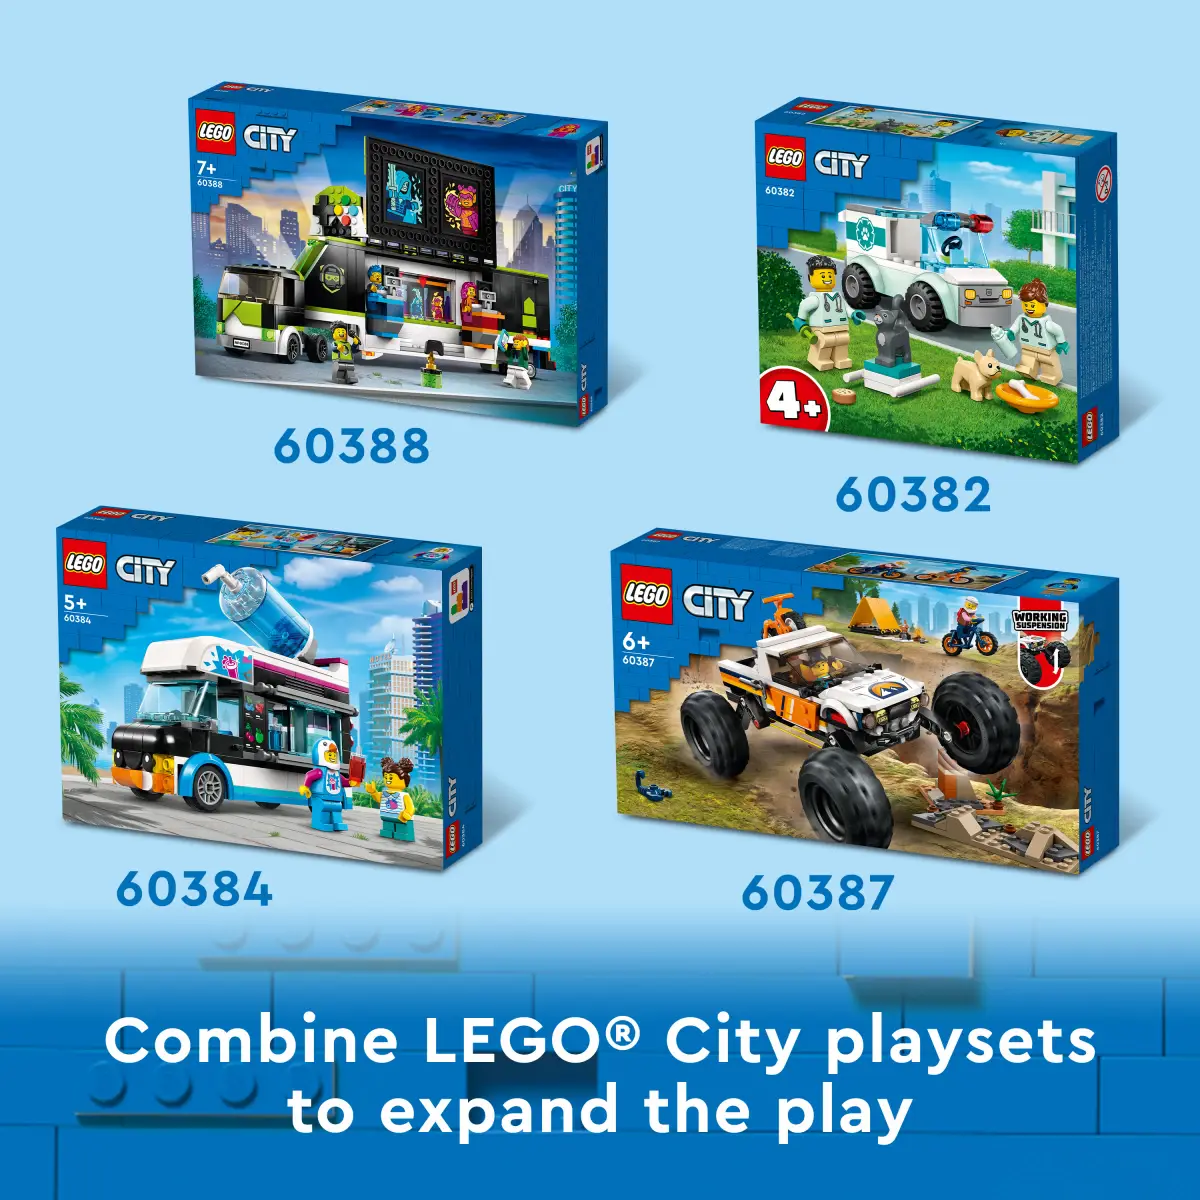 LEGO City Custom Car Garage Building Toy Set, 507 Pieces, Multicolour, 6Y+